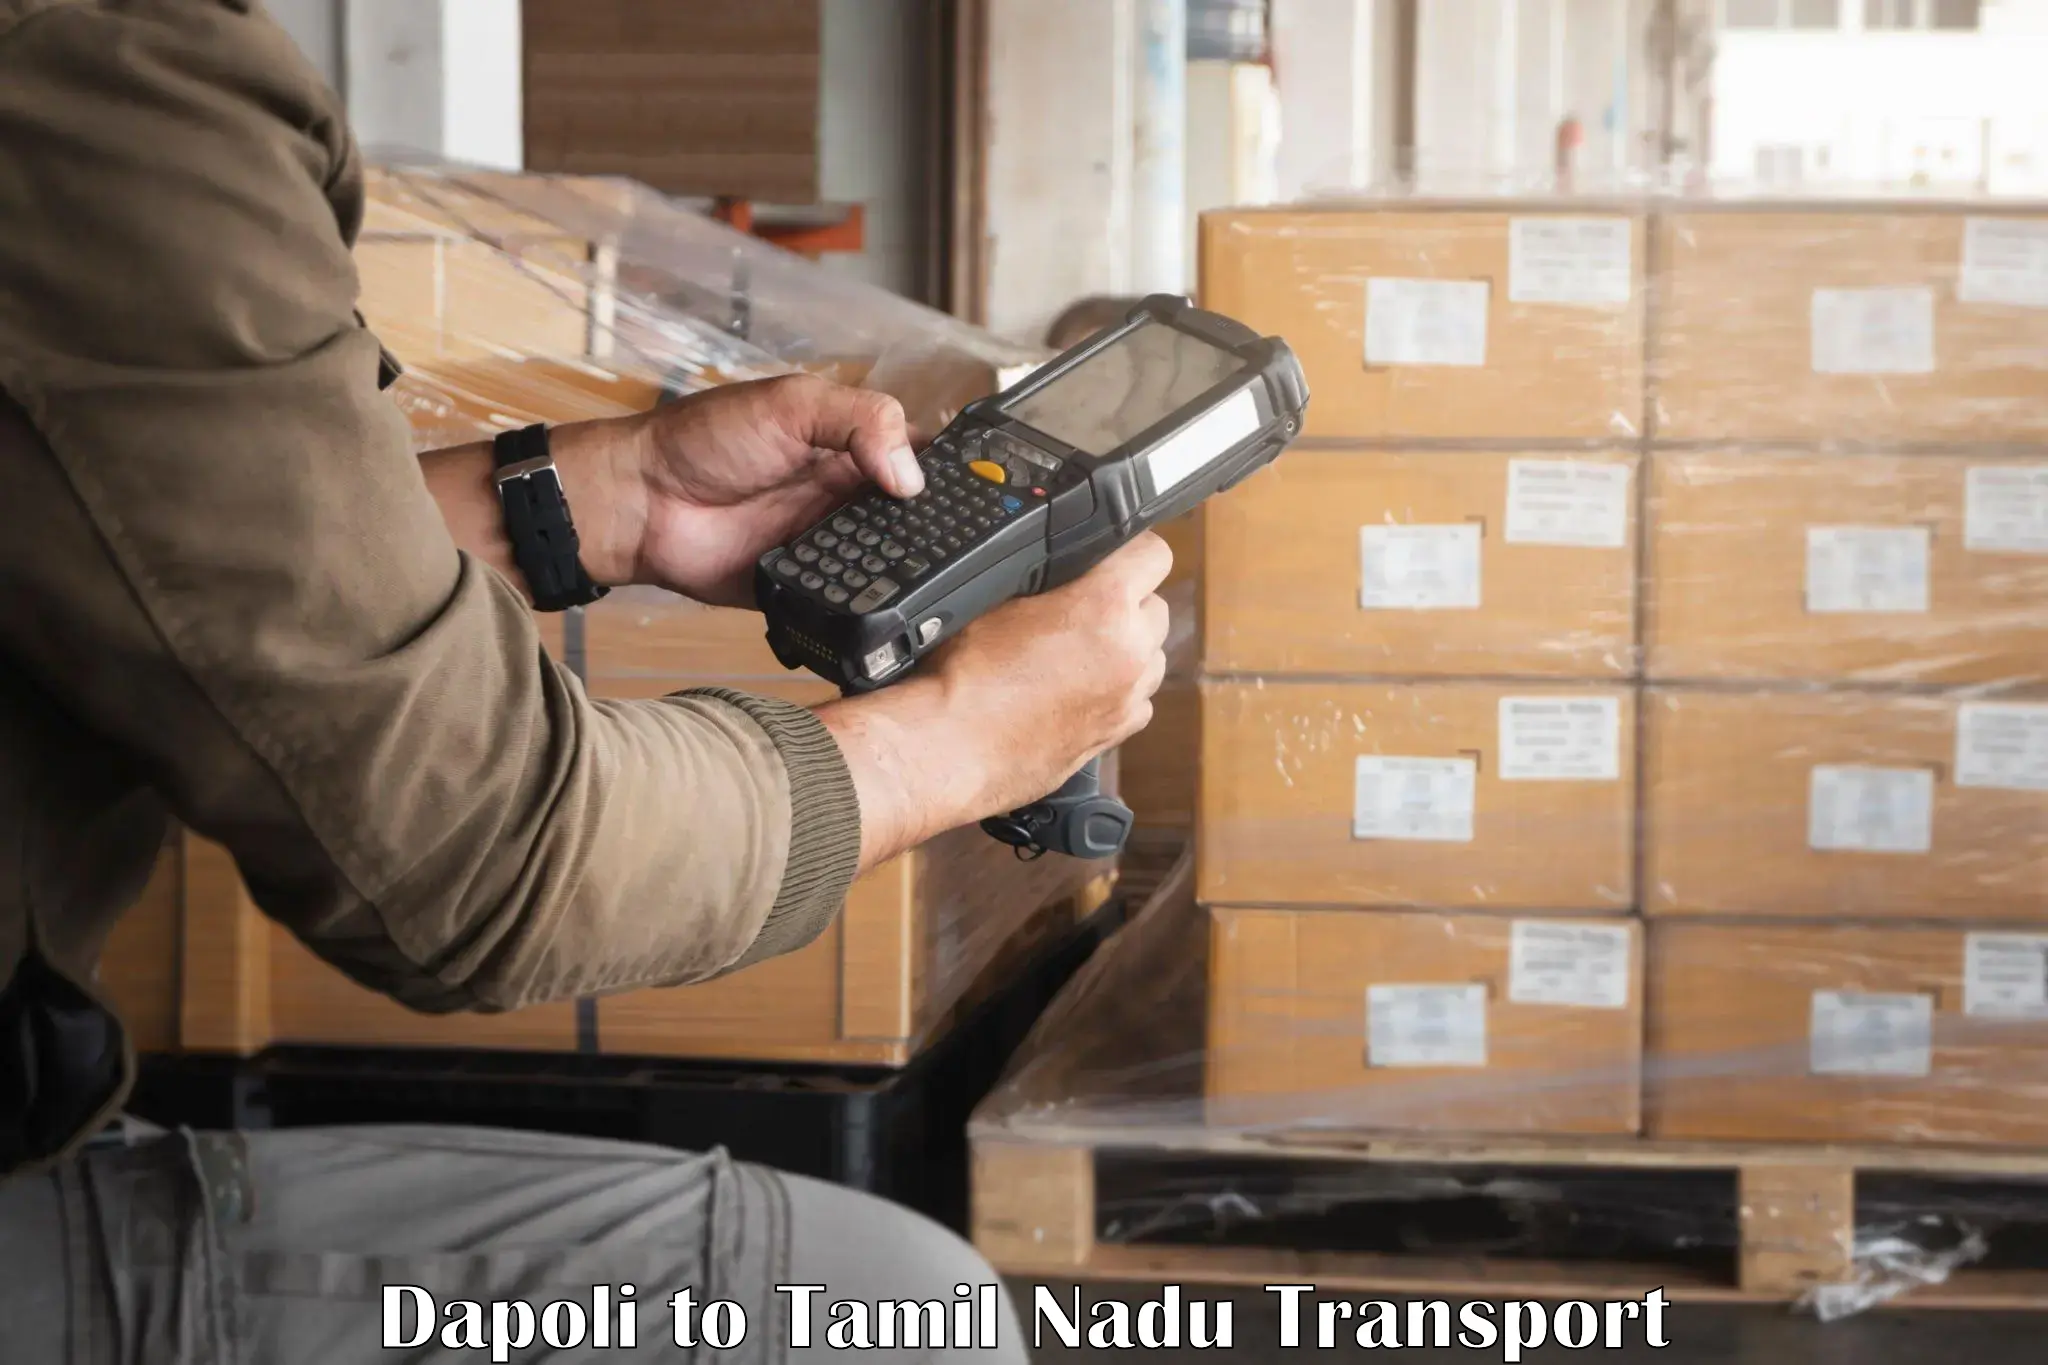 Container transportation services Dapoli to Puliampatti